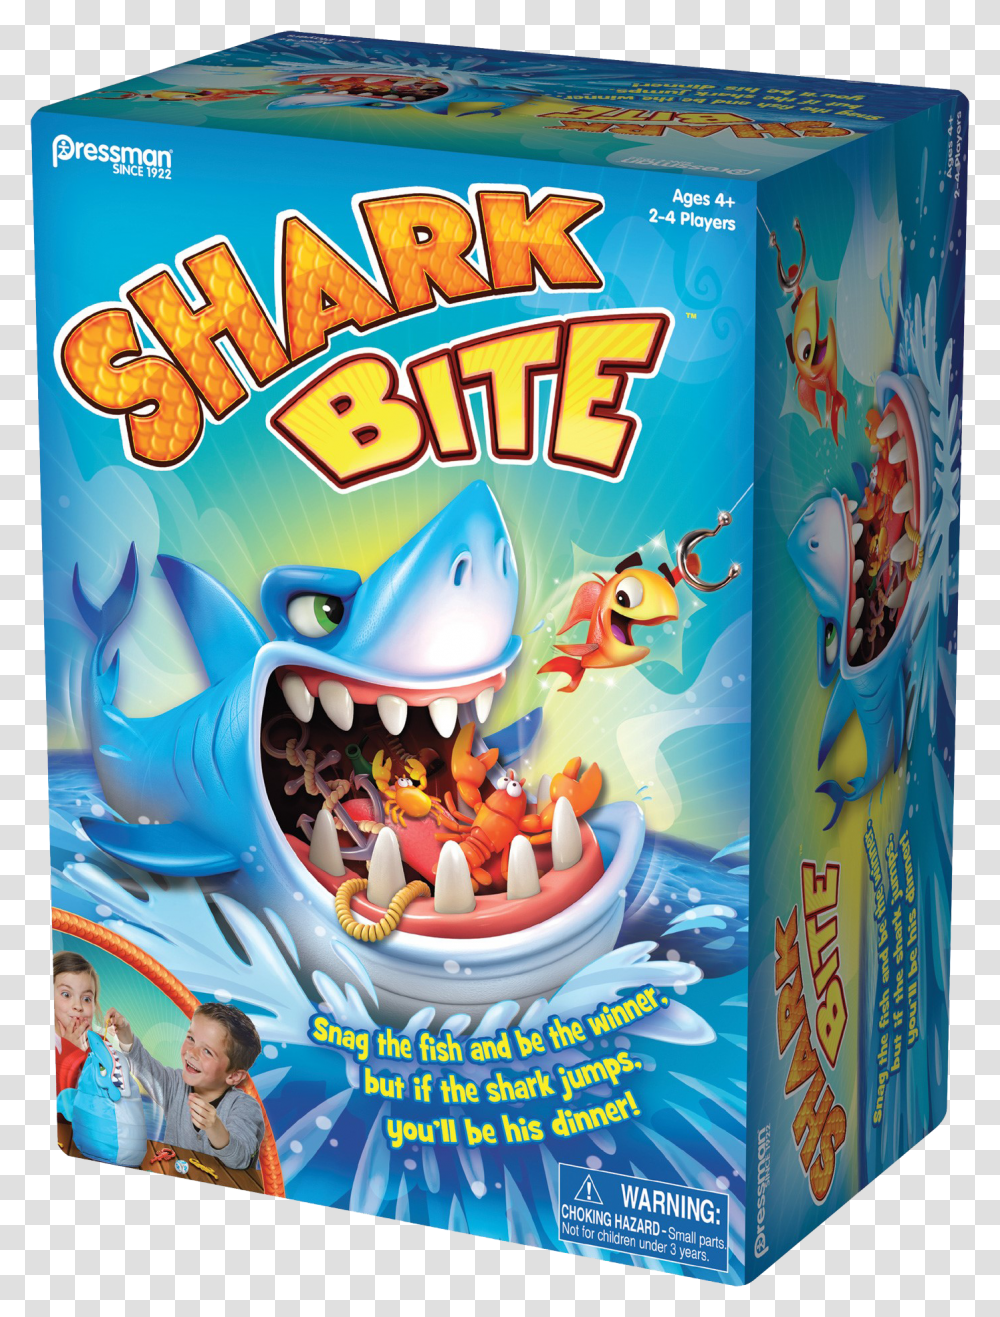 Shark Bite Board Game Transparent Png